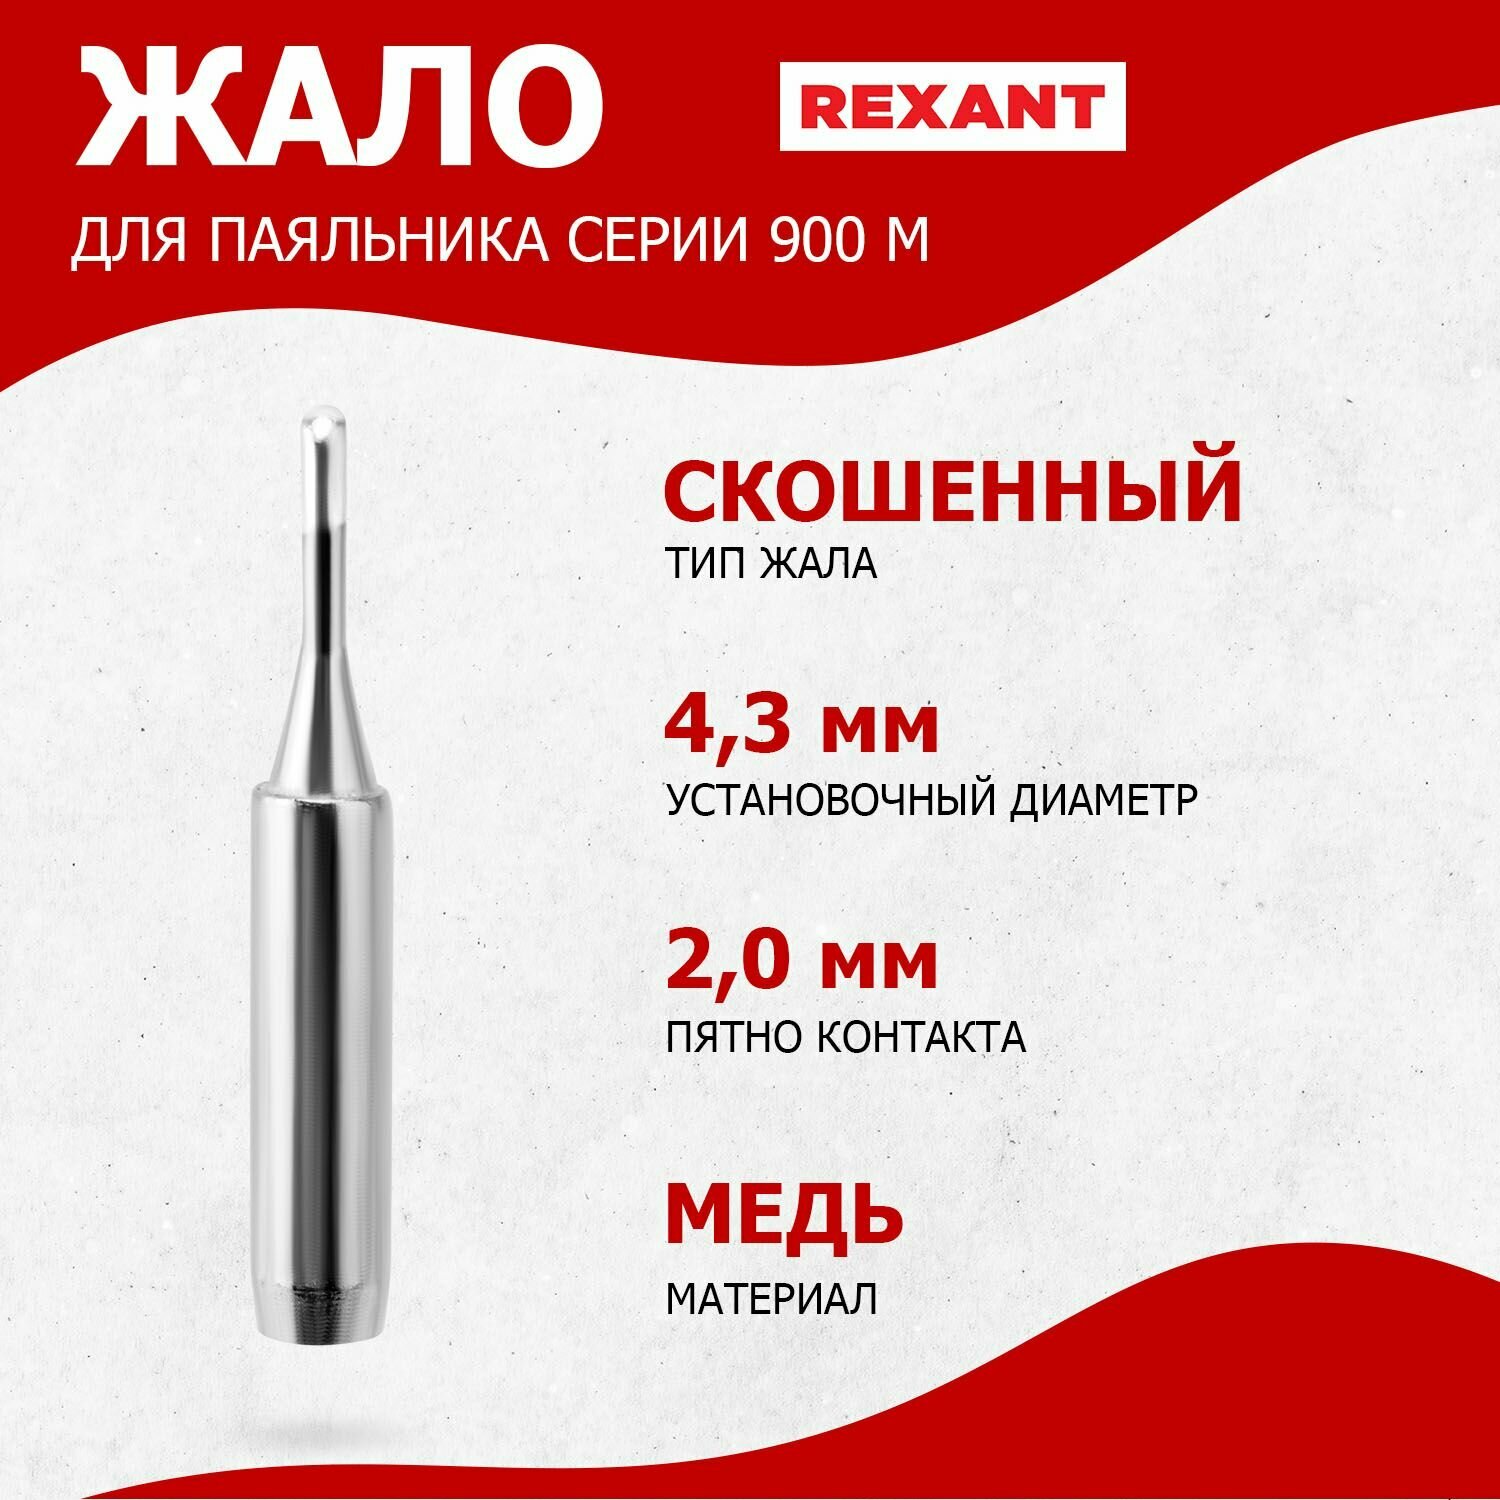 Долговечное жало для паяльника REXANT скошенного типа (2 мм), диаметр 4.3 мм